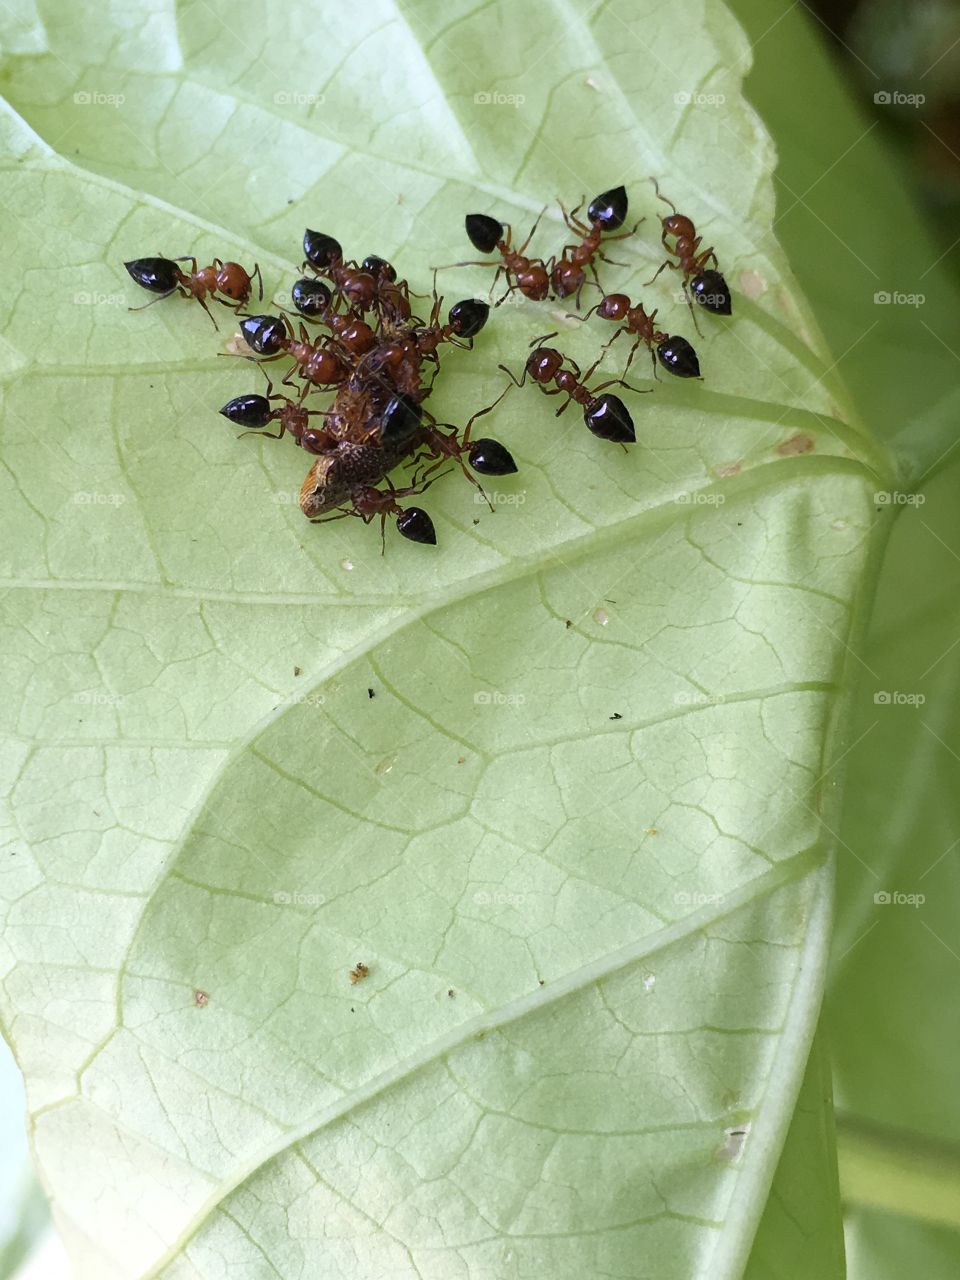 Ants capture a bug on a sweet potato leaf. 